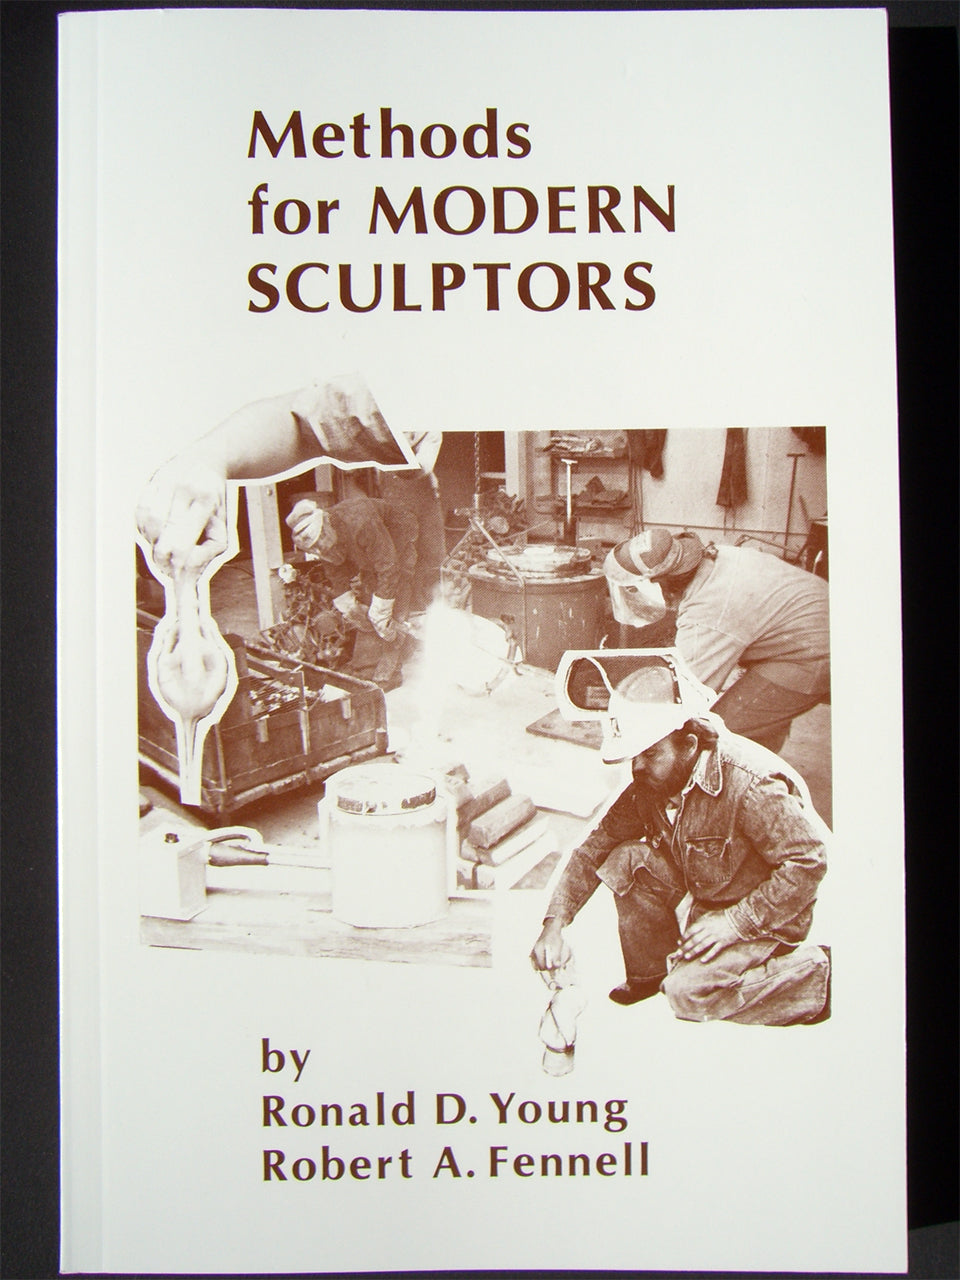 Methods for Modern Sculptors